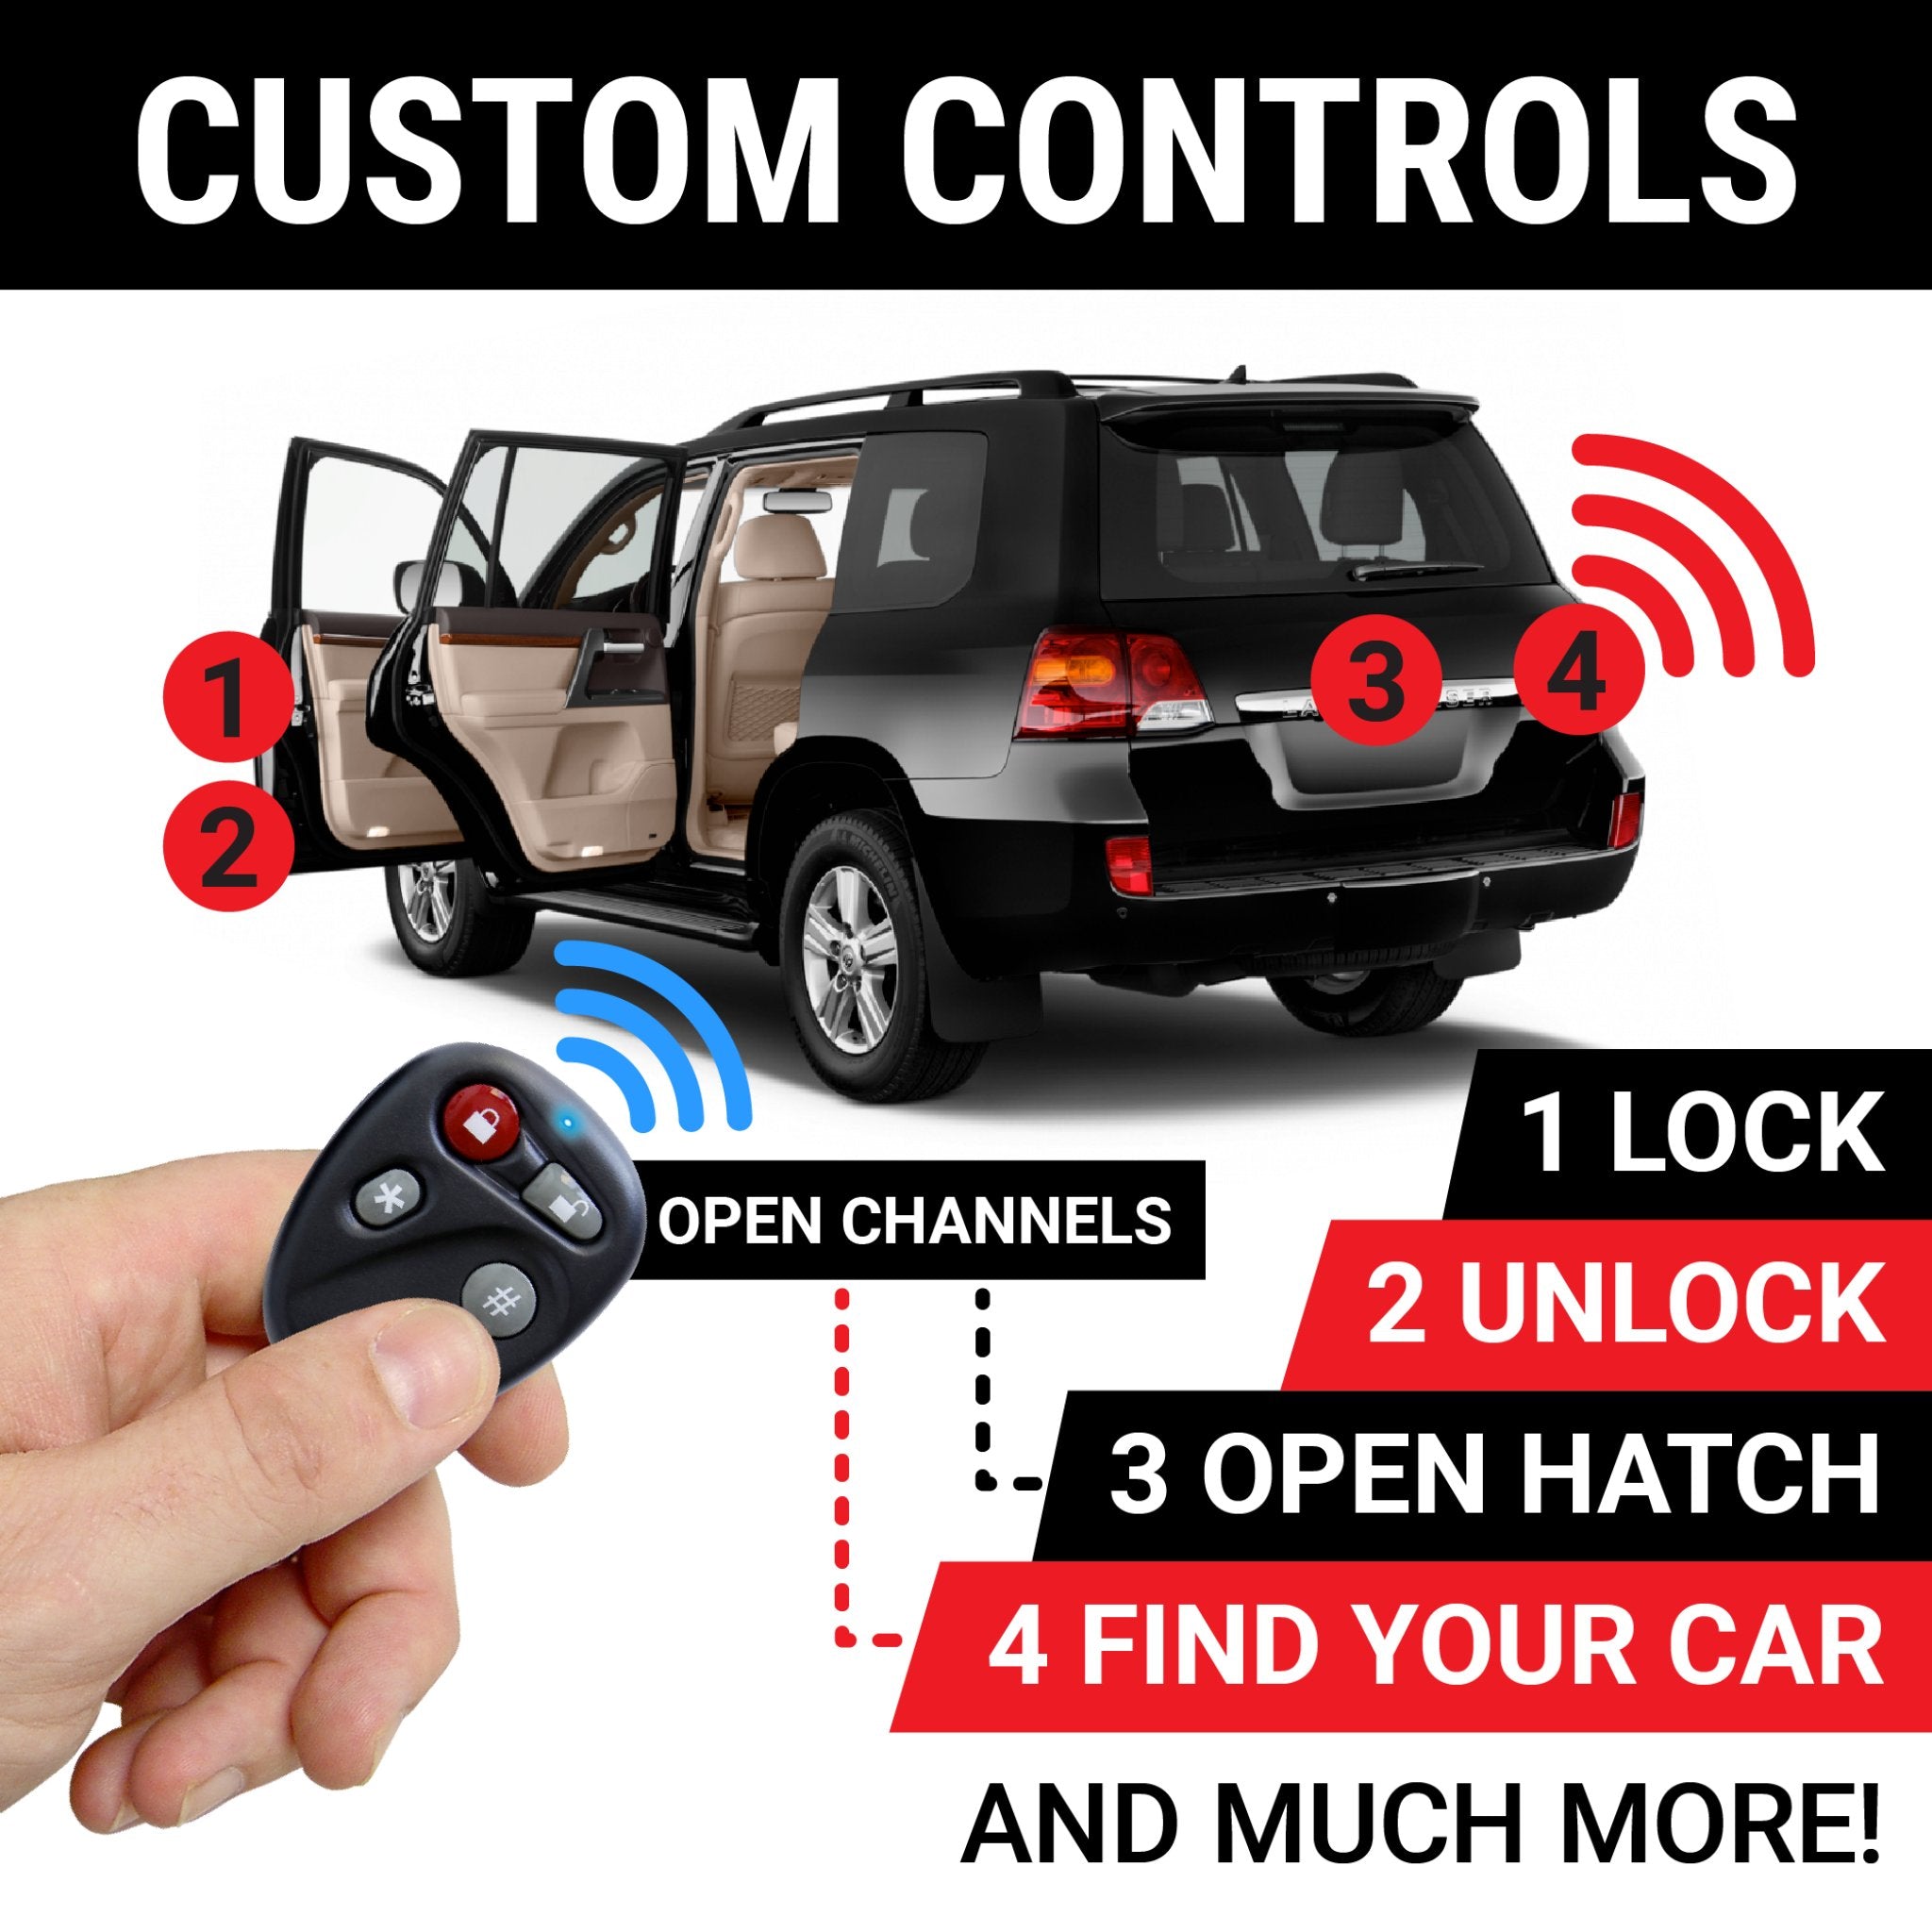 Autoloc 8 canales Control remoto sistema de entrada sin llave 2 llavero cerradura desbloquear puerta